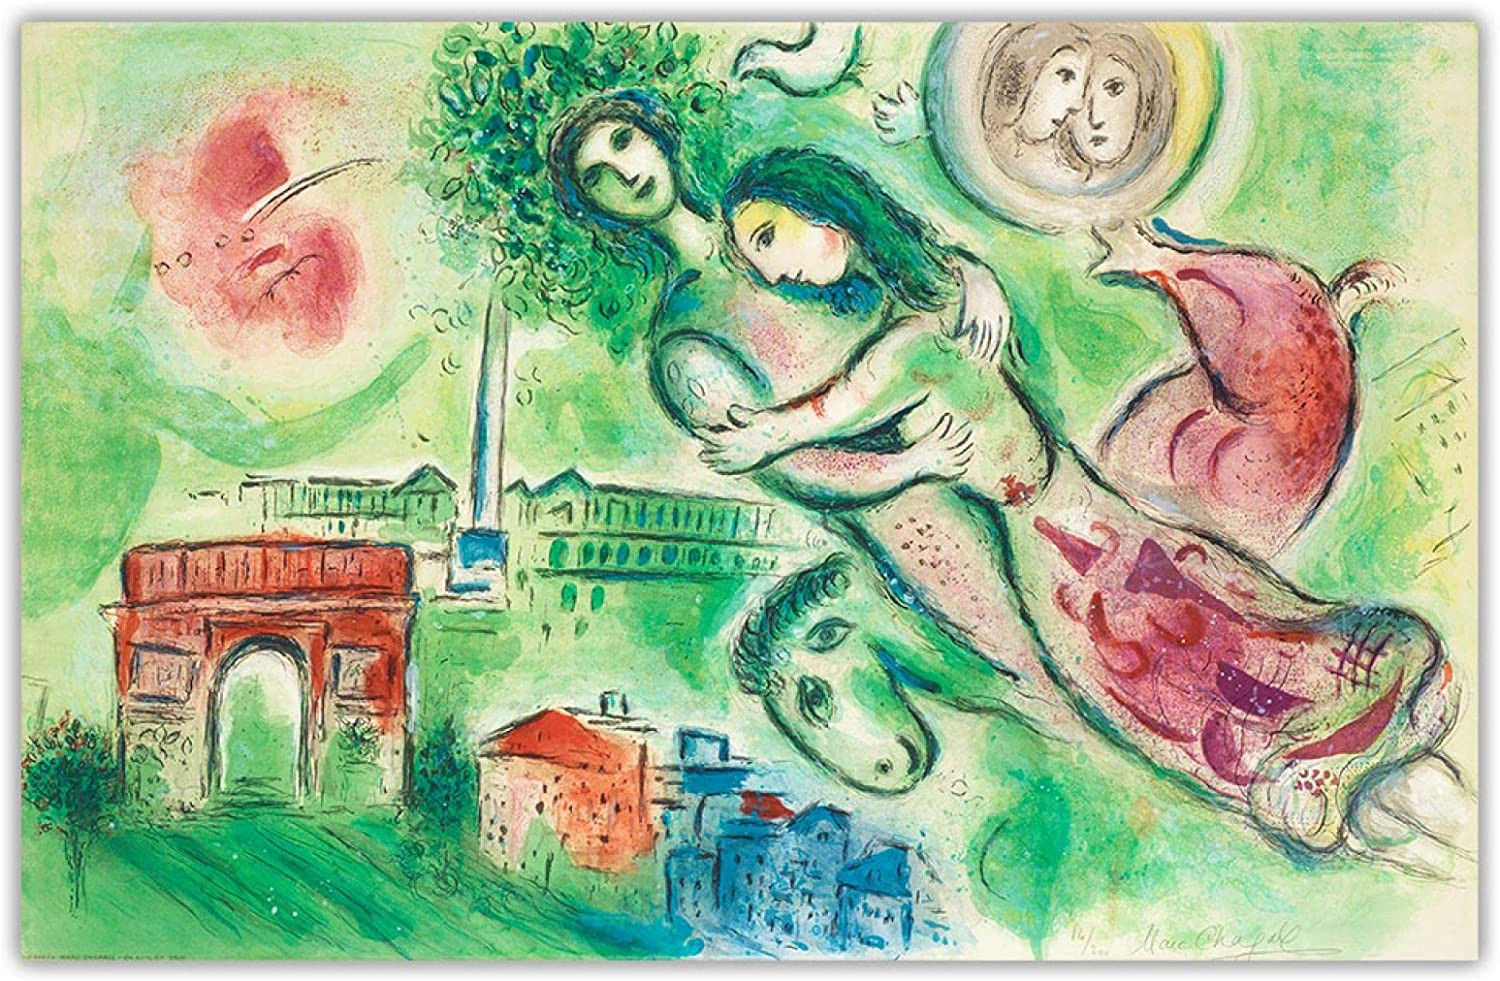 Litho van Marc Chagall, La flûte enchantée (The Magic Flute), 1967